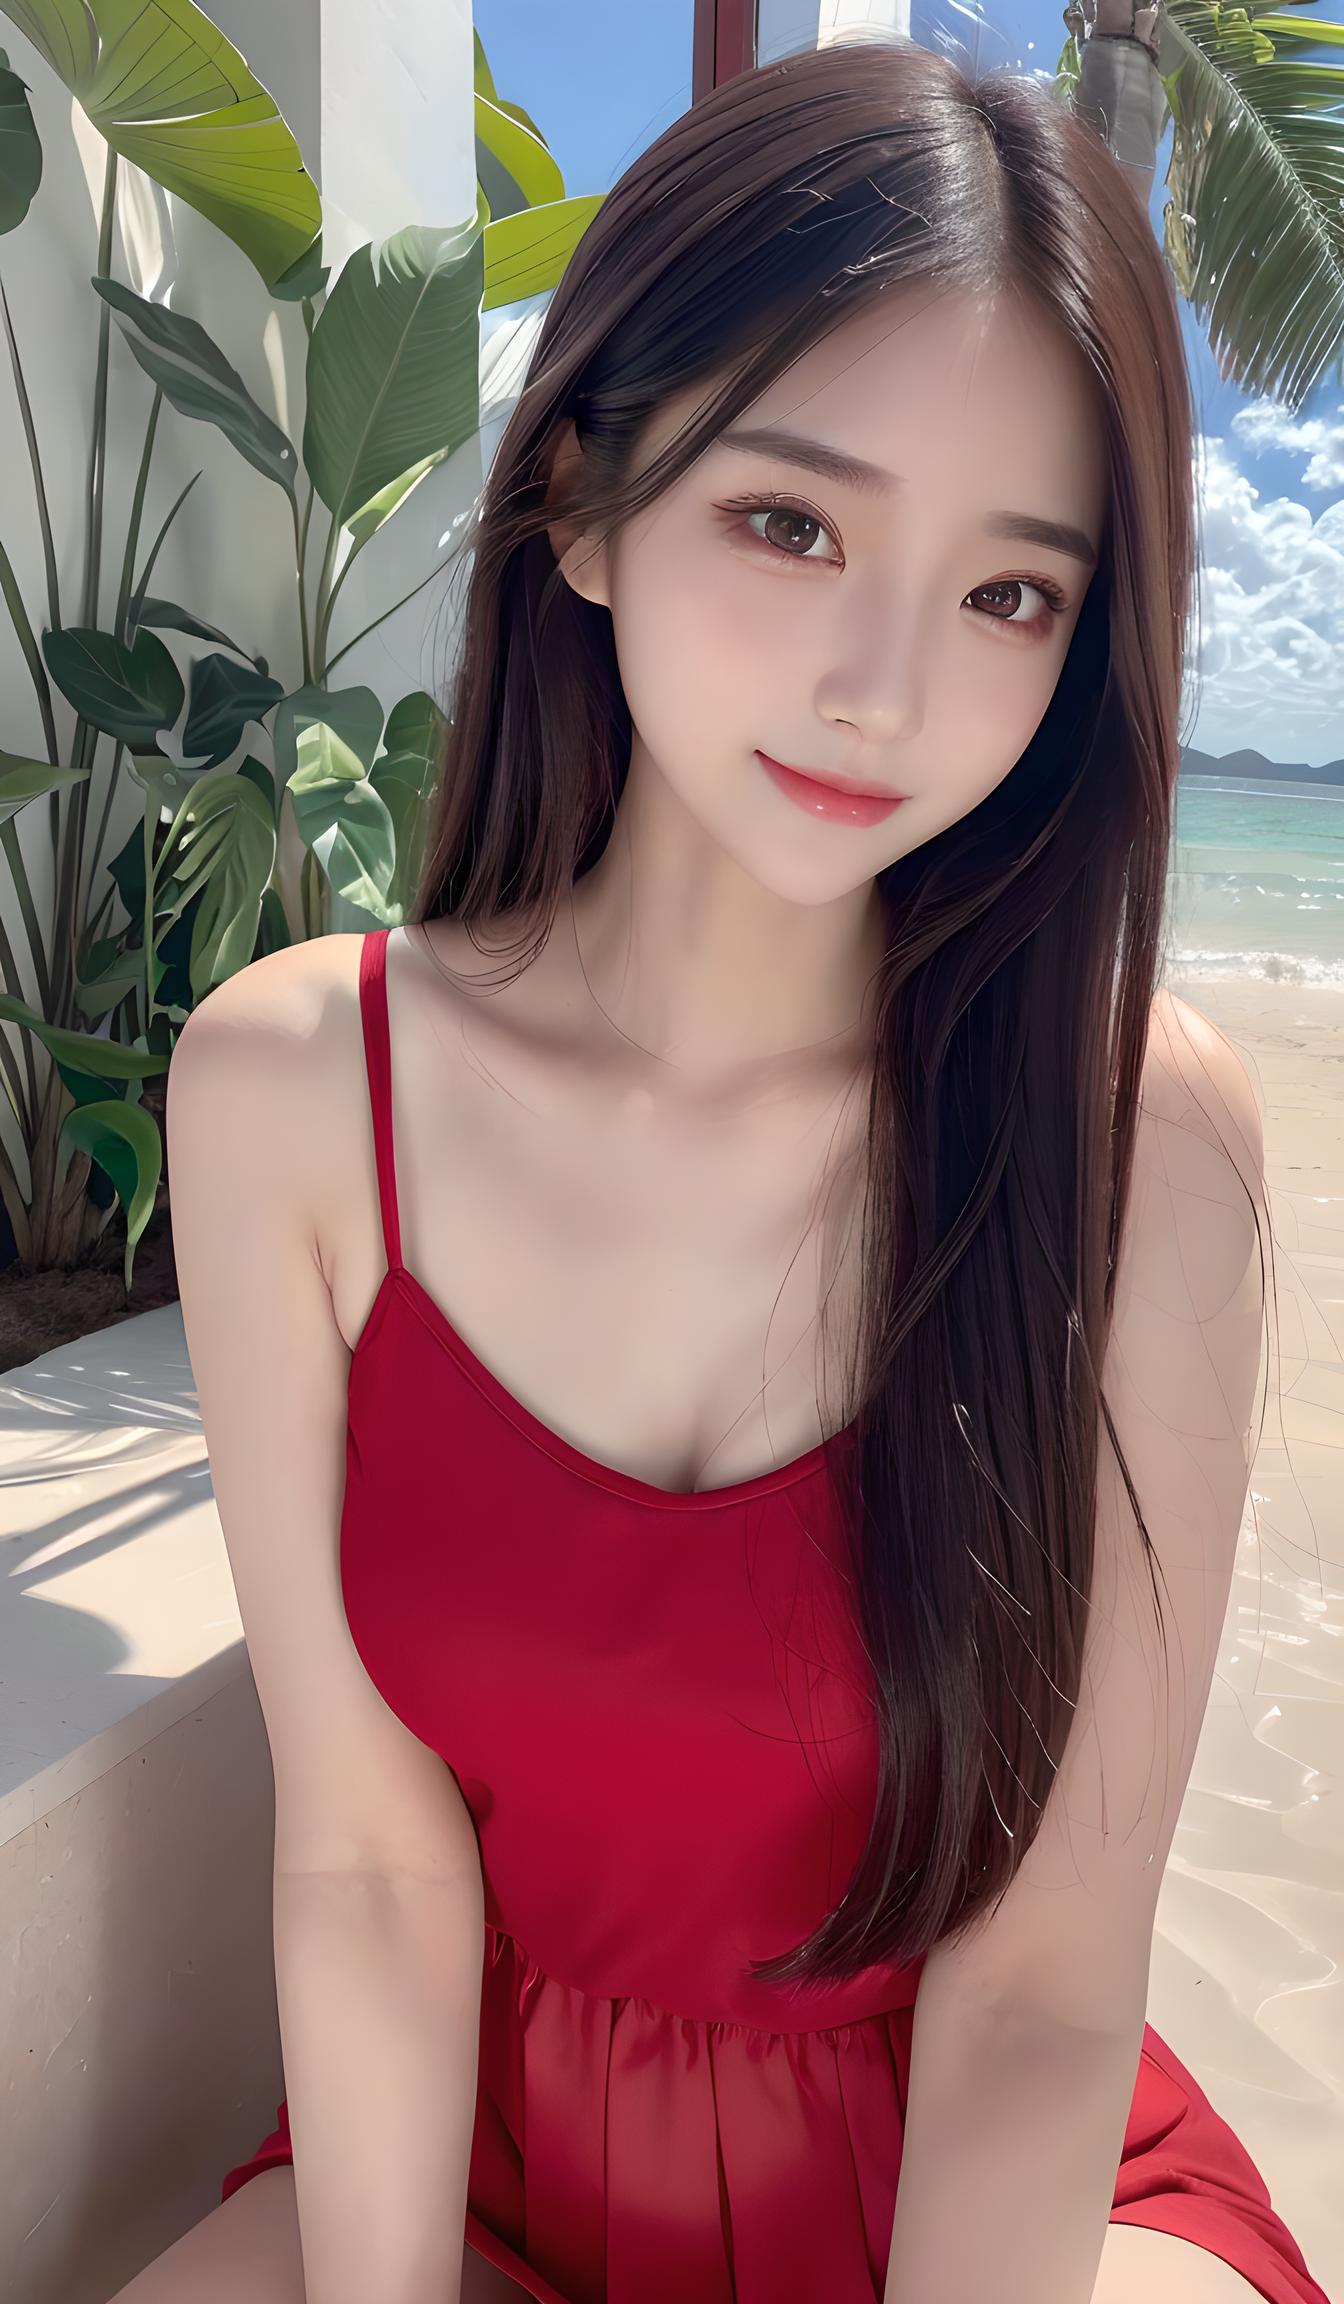 沙滩红裙女孩